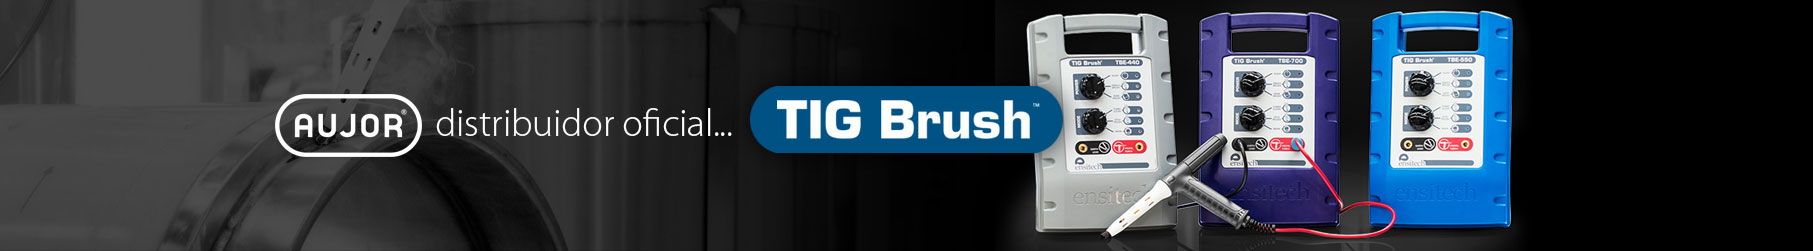 Tig Brush